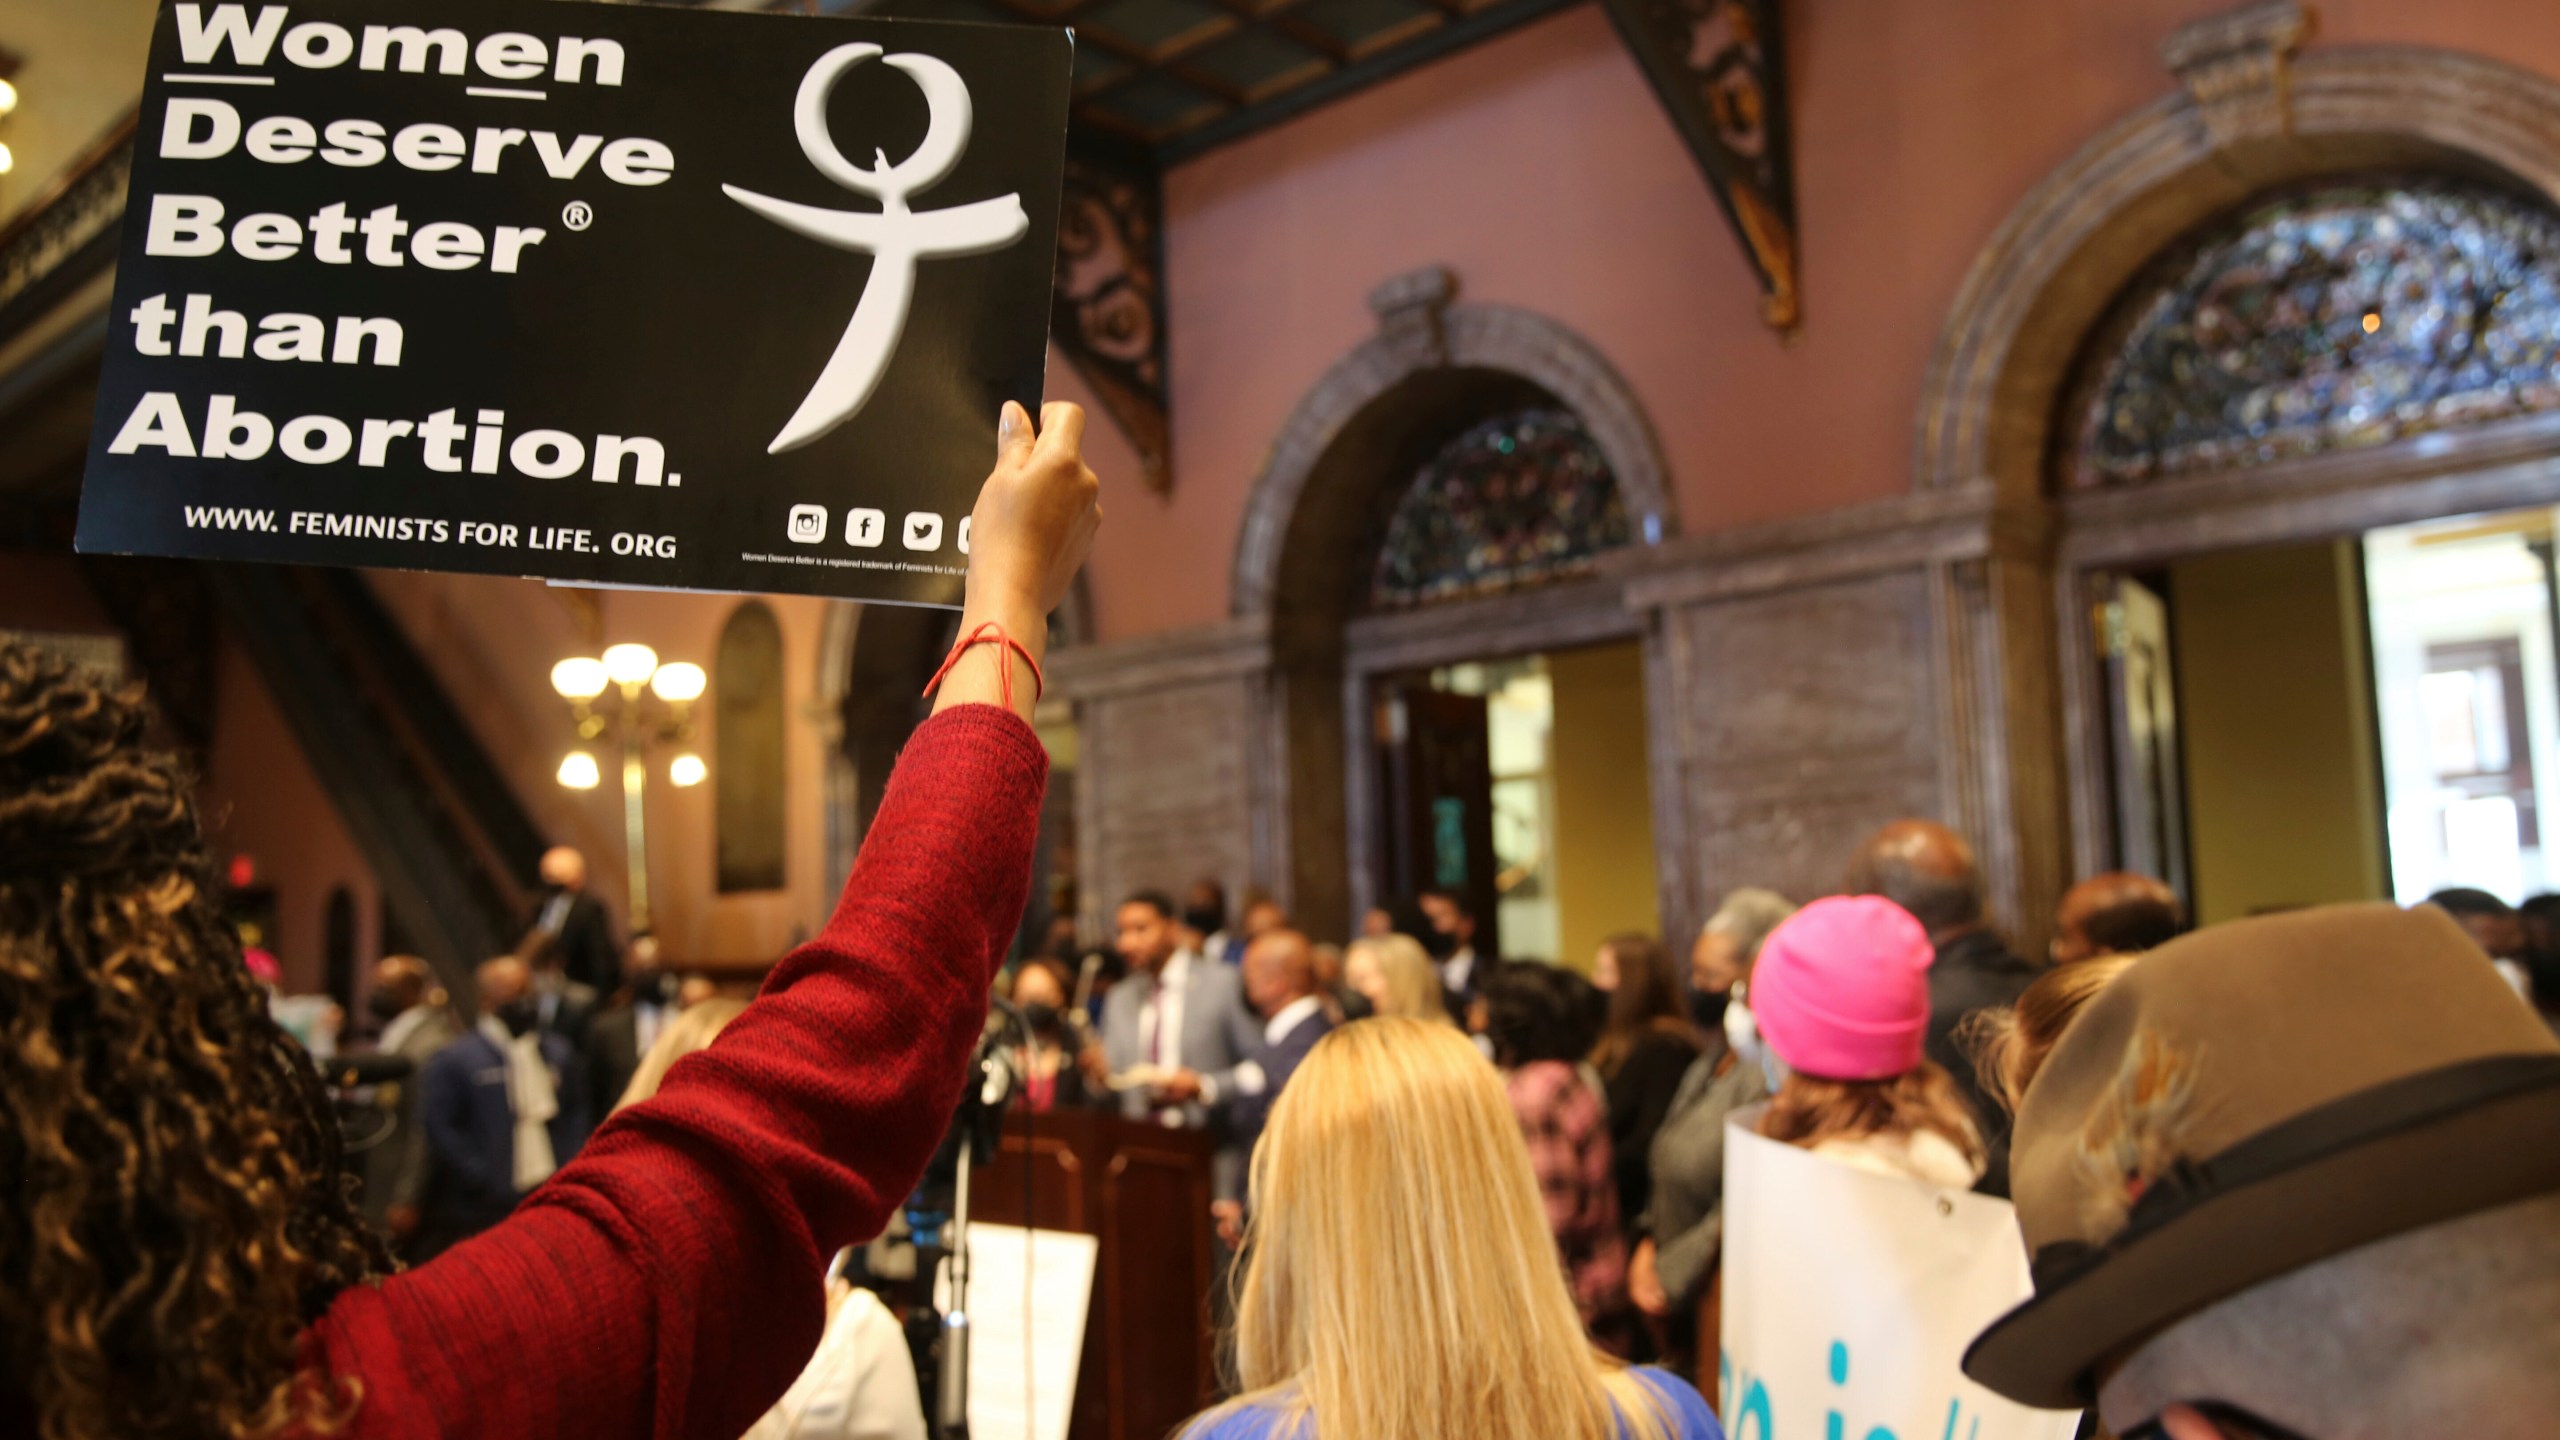 South Carolina Passes Bill Banning Most Abortions